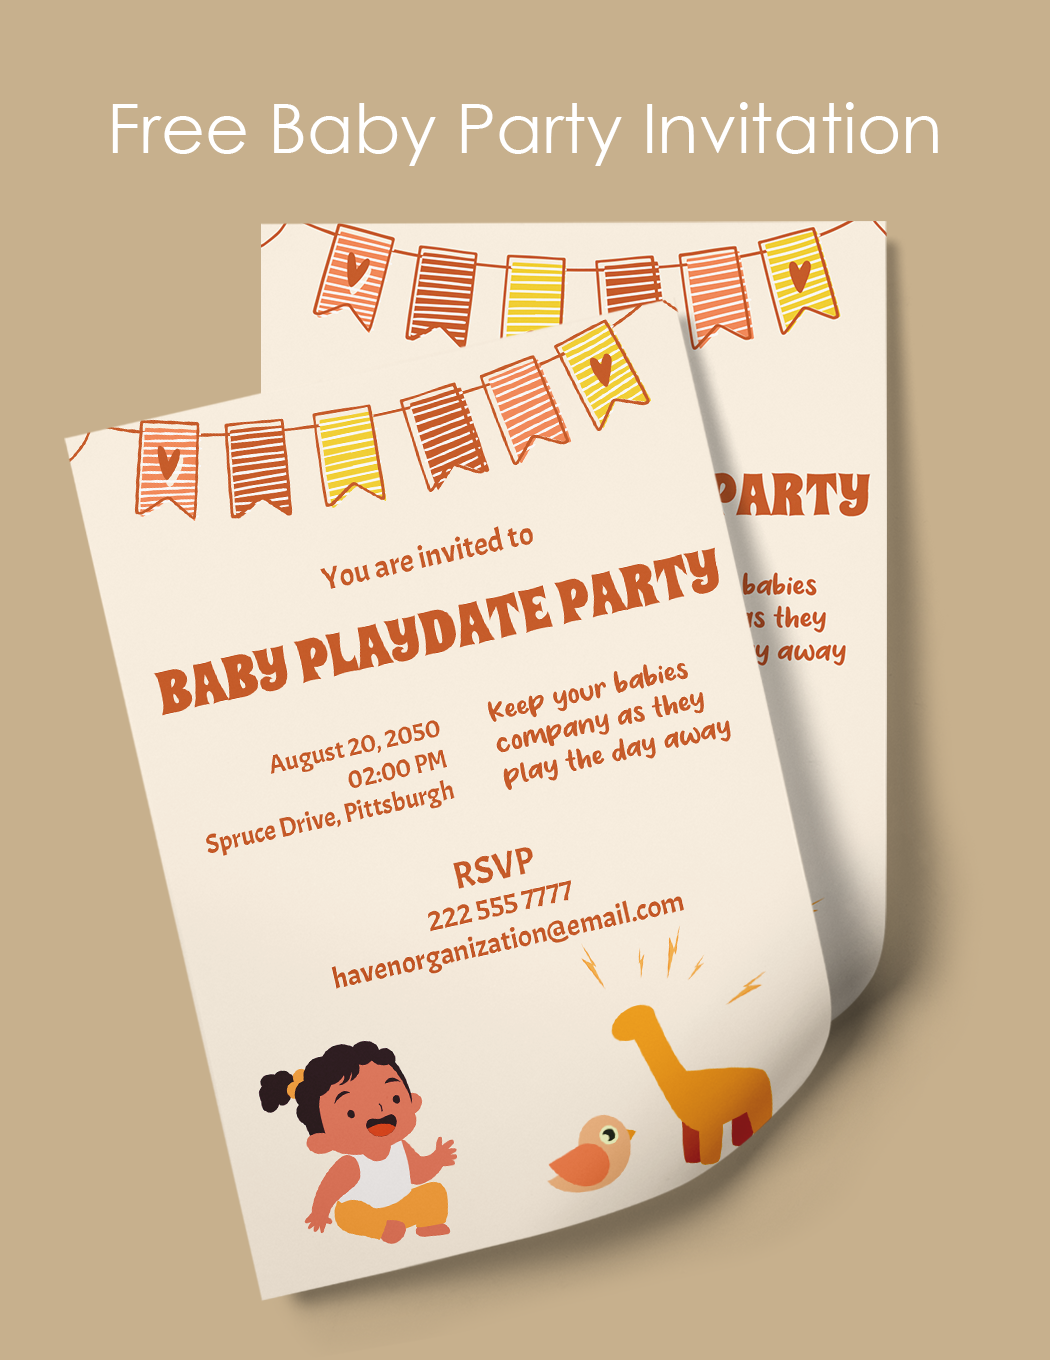 Baby Party Invitation